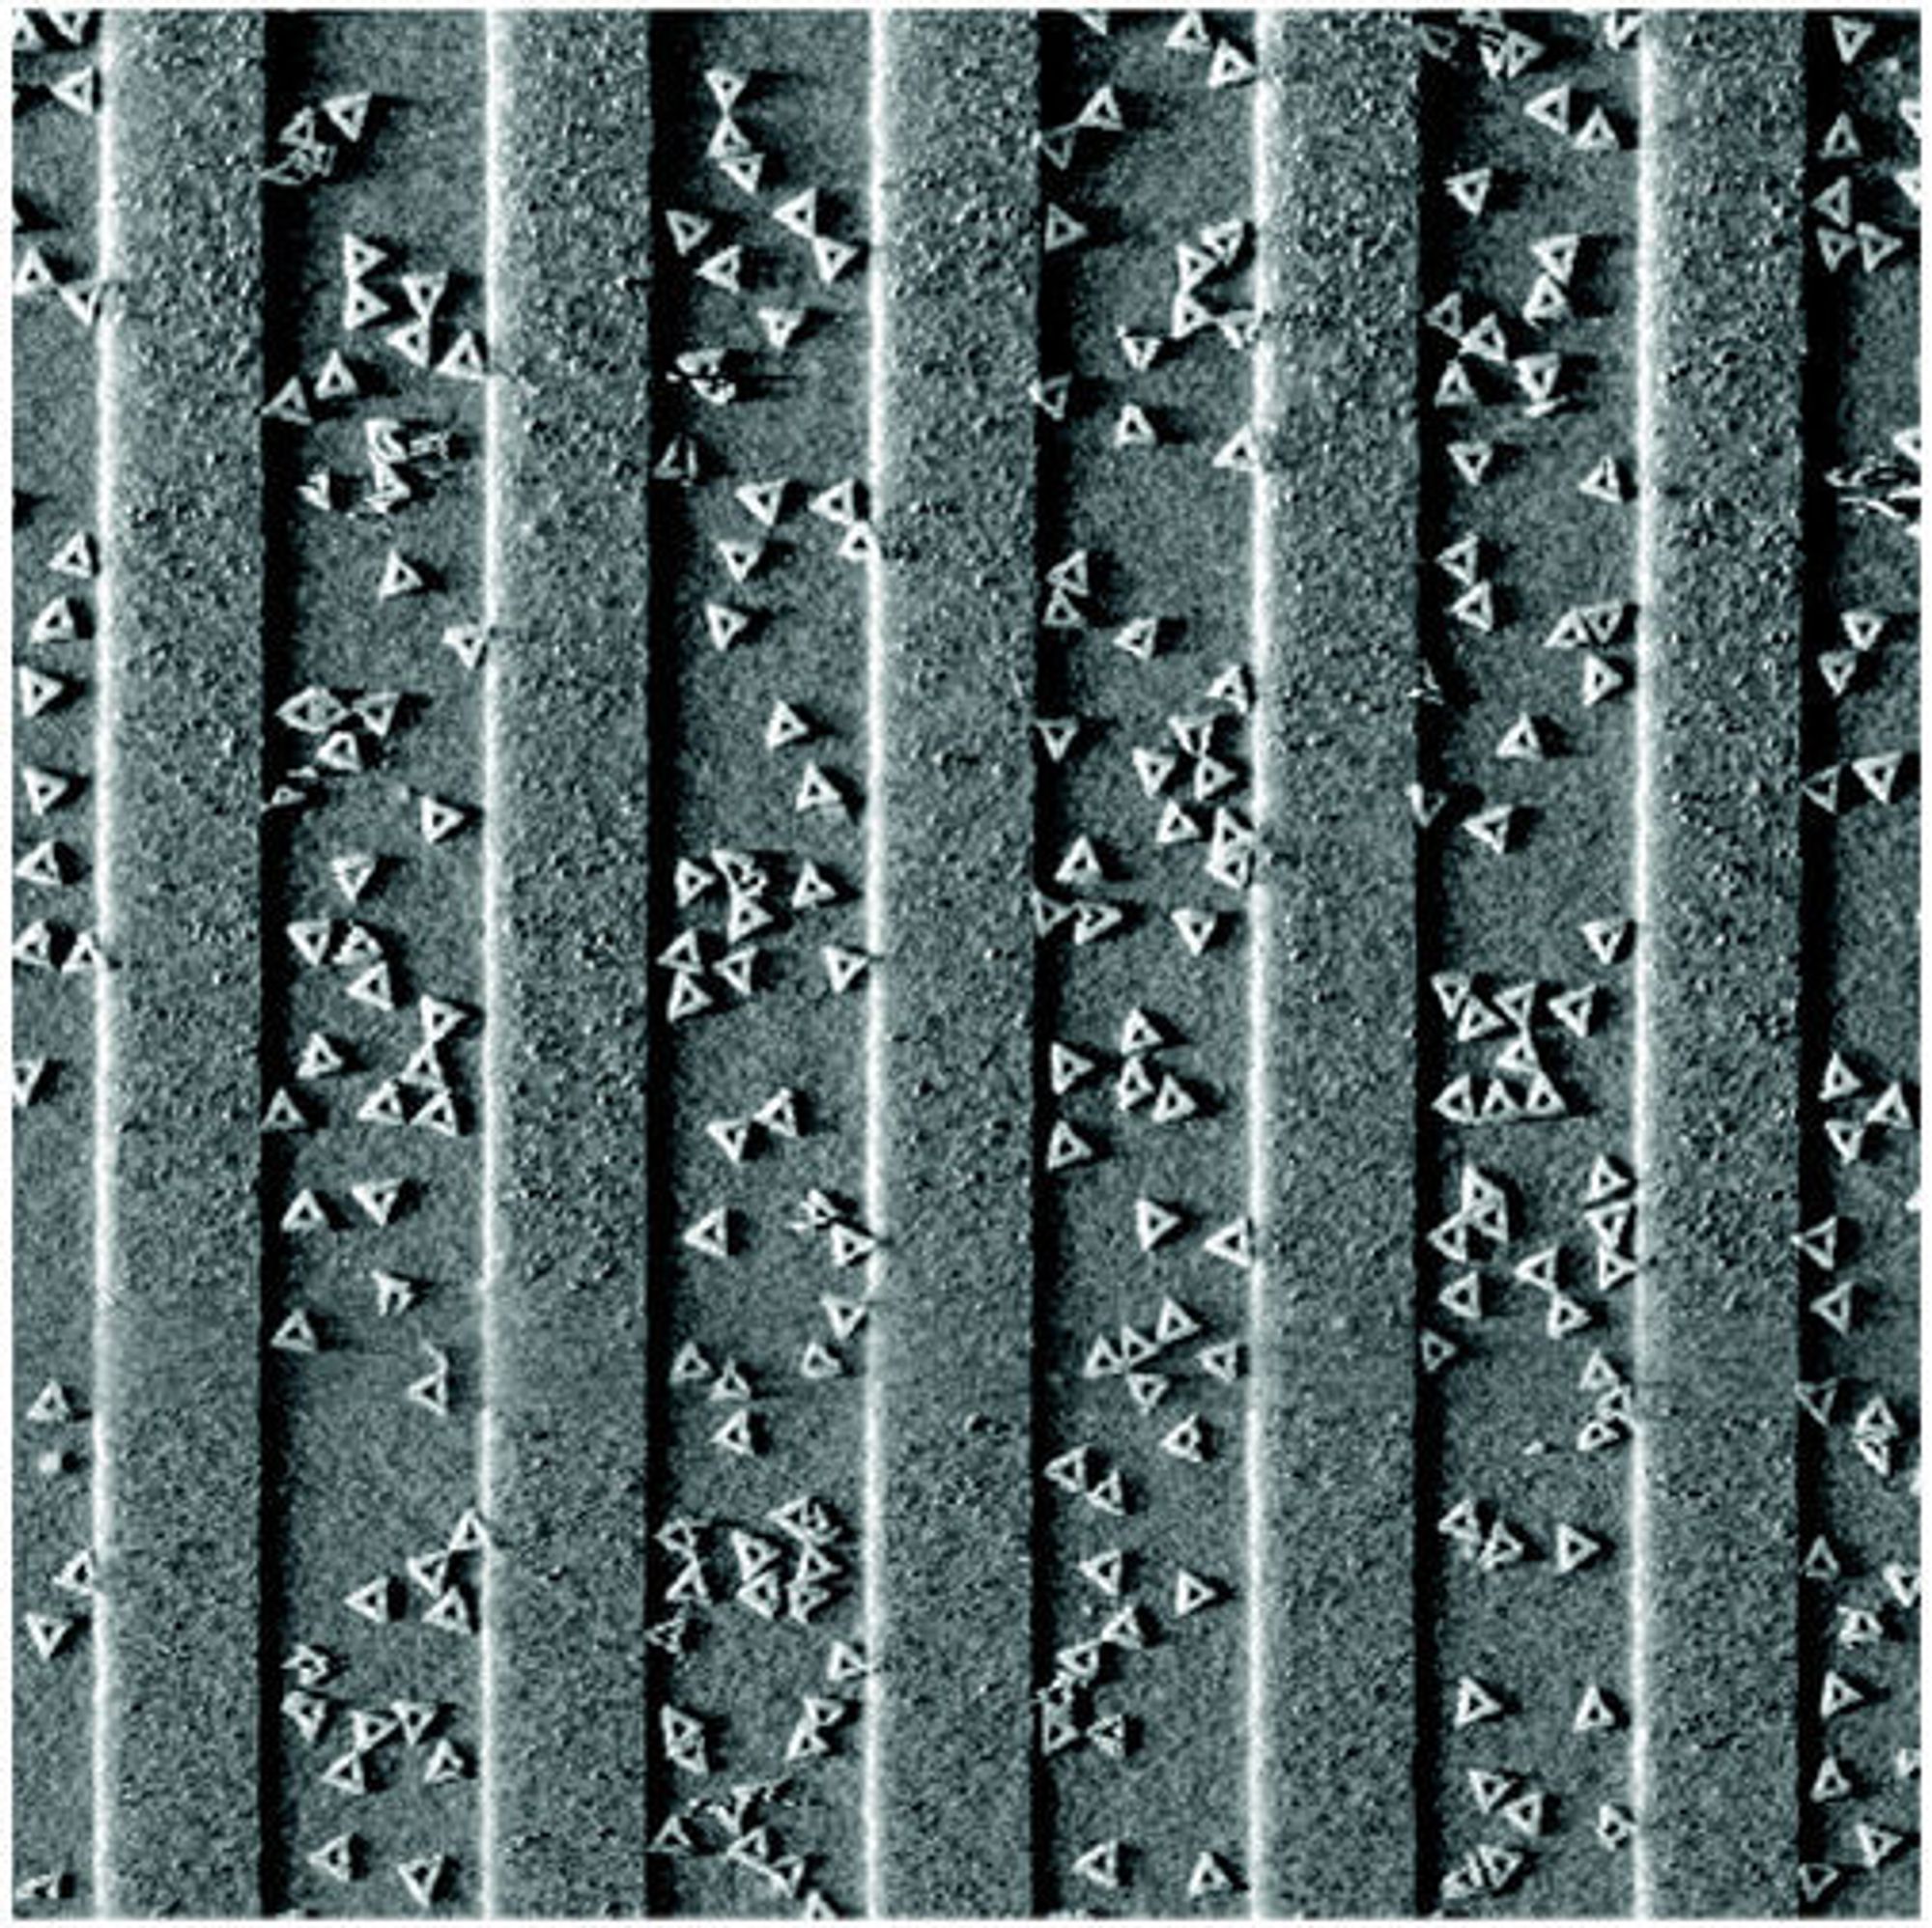 IBM-forskere bruker DNA-origami som stillaser for å bygge små kretskort. Bildet viser triangelformede DNA-nanostrukturer som er knyttet til brede linjer på en litografisk mønstret overflate.